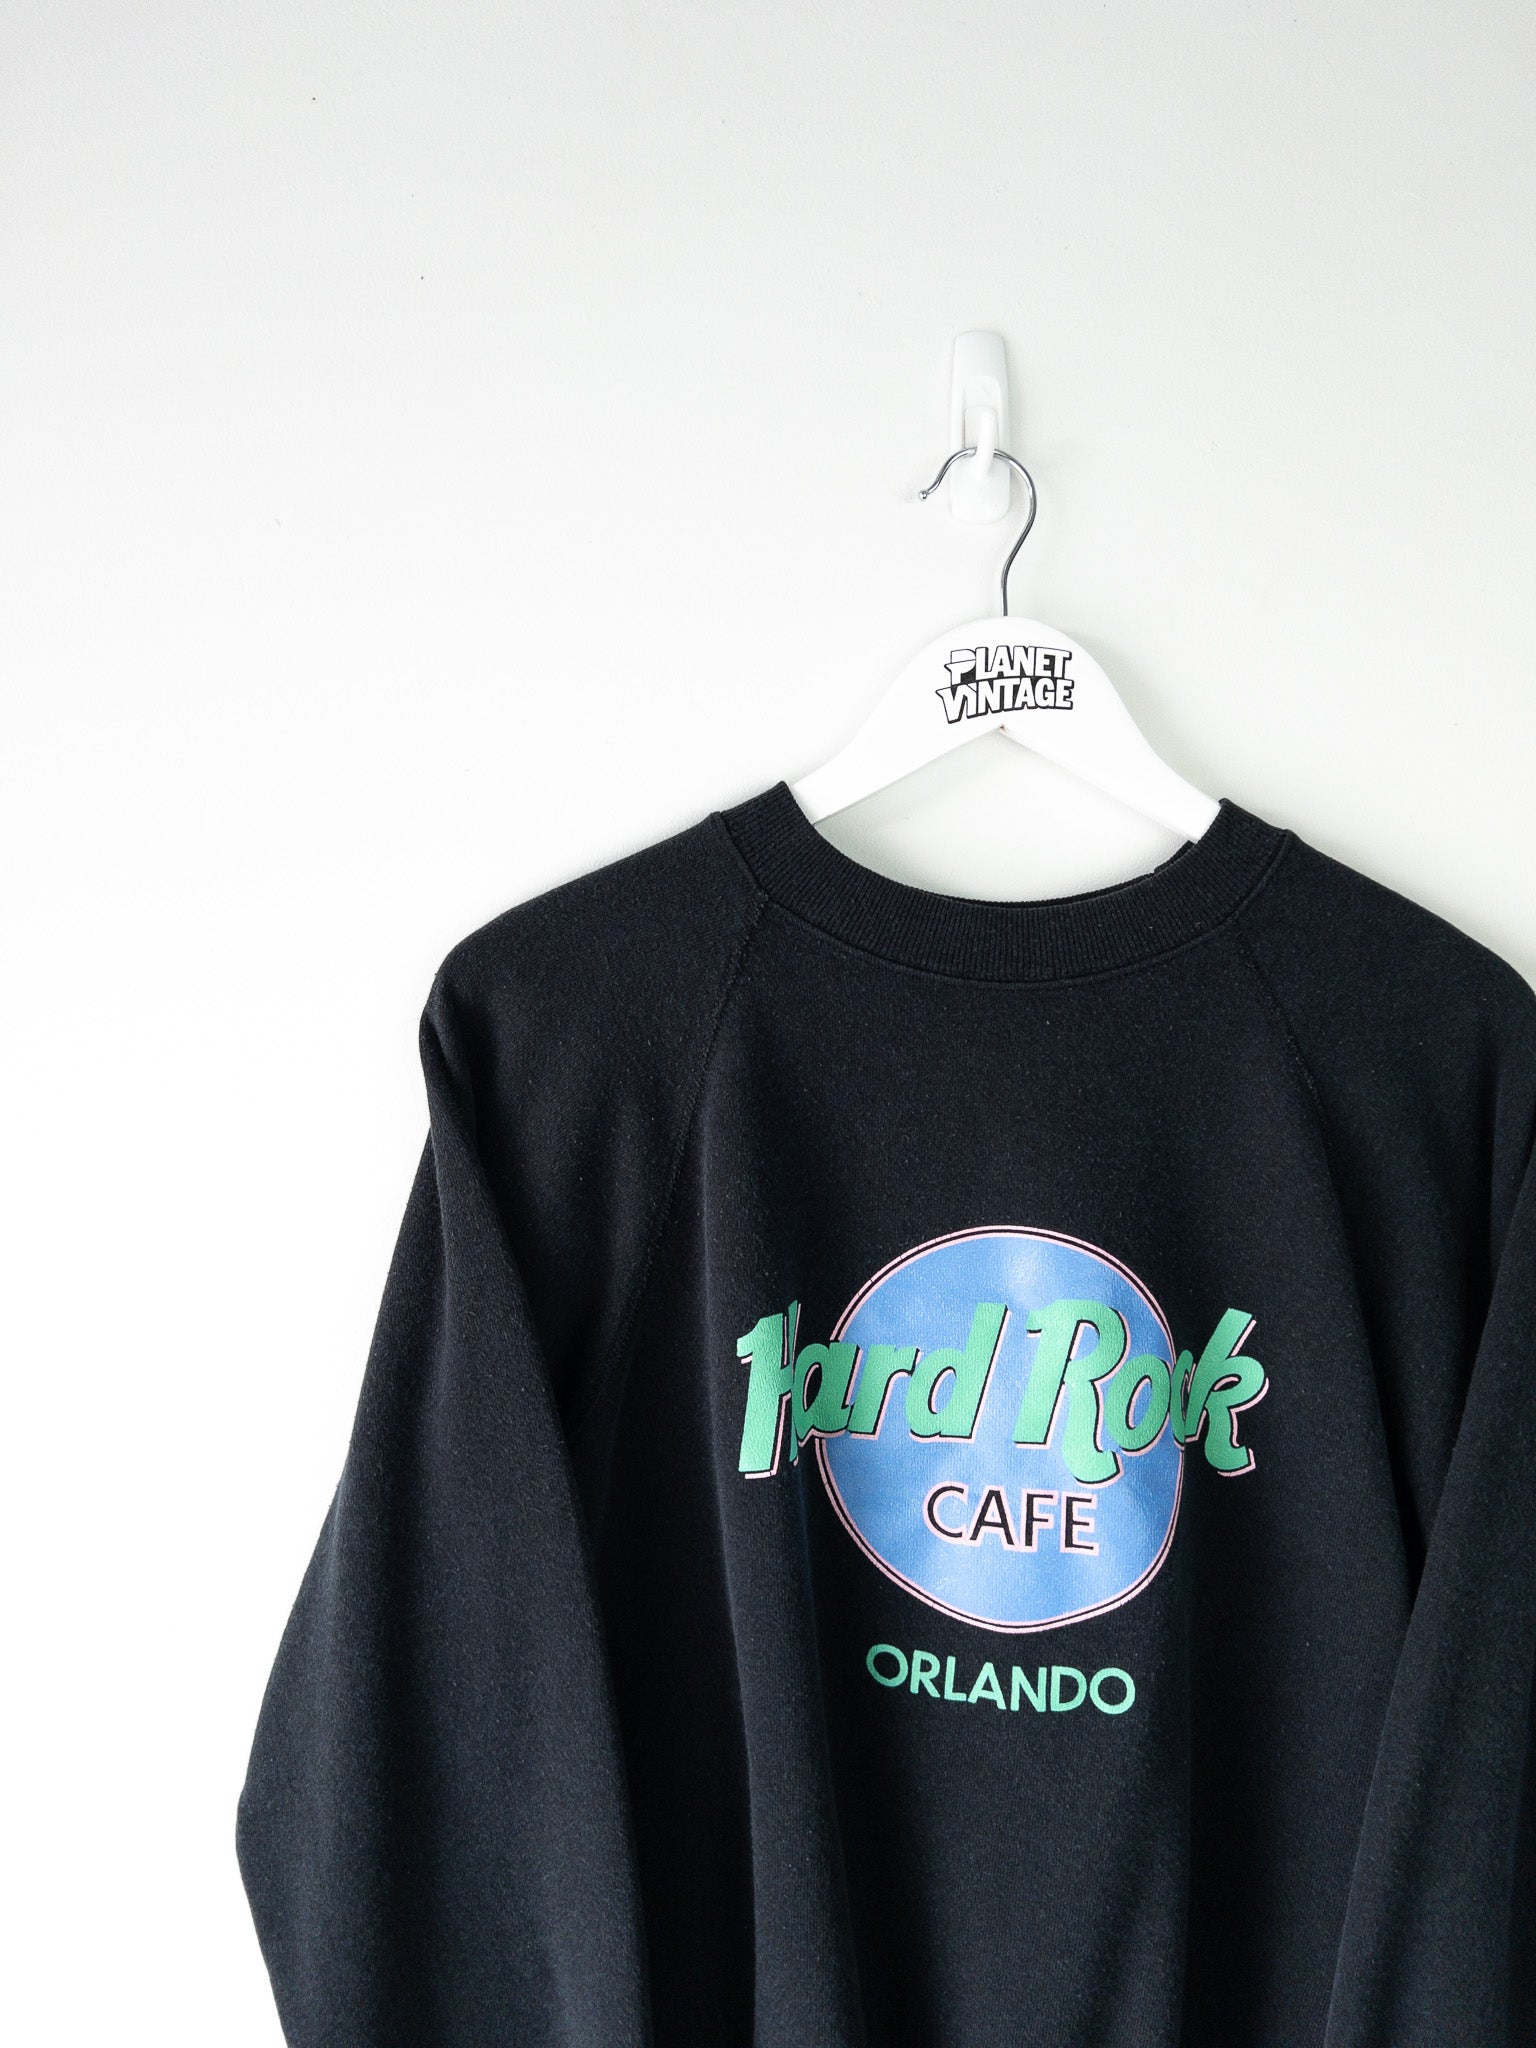 Vintage Hard Rock Cafe Orlando Sweatshirt (L)